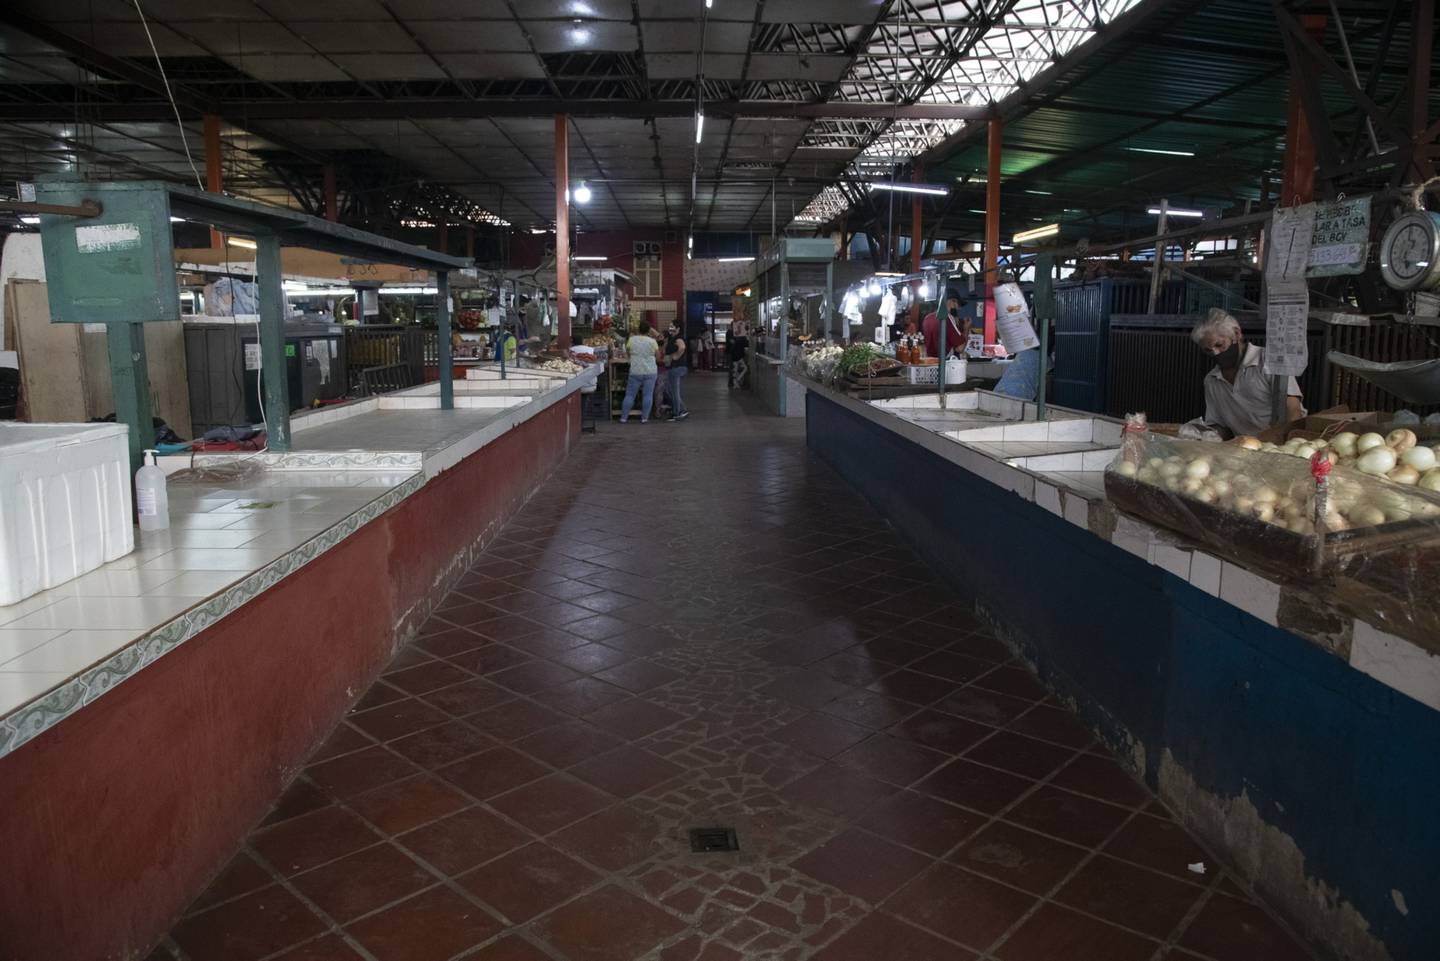 Puestos vacíos en el mercado municipal de Guaicaipuro, en Caracas, el sábado 12 de junio de 2021.dfd